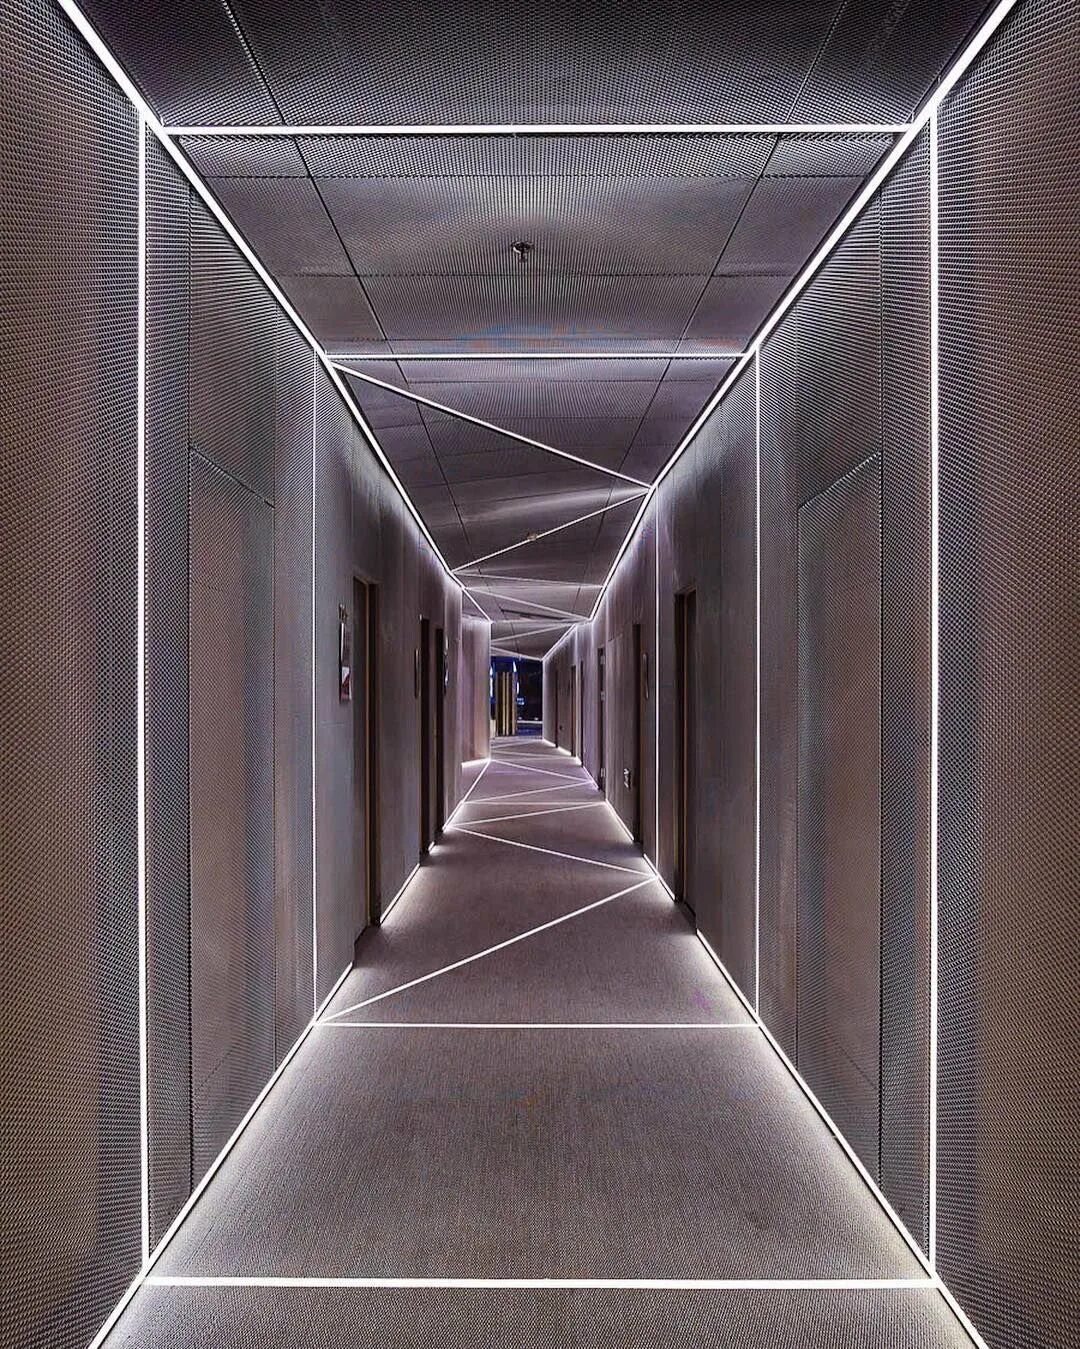 Освещение в коридоре. Светодиодная подсветка в коридоре. Линейный свет в интерьере. Подсветка потолка в коридоре. Свет от световых линий